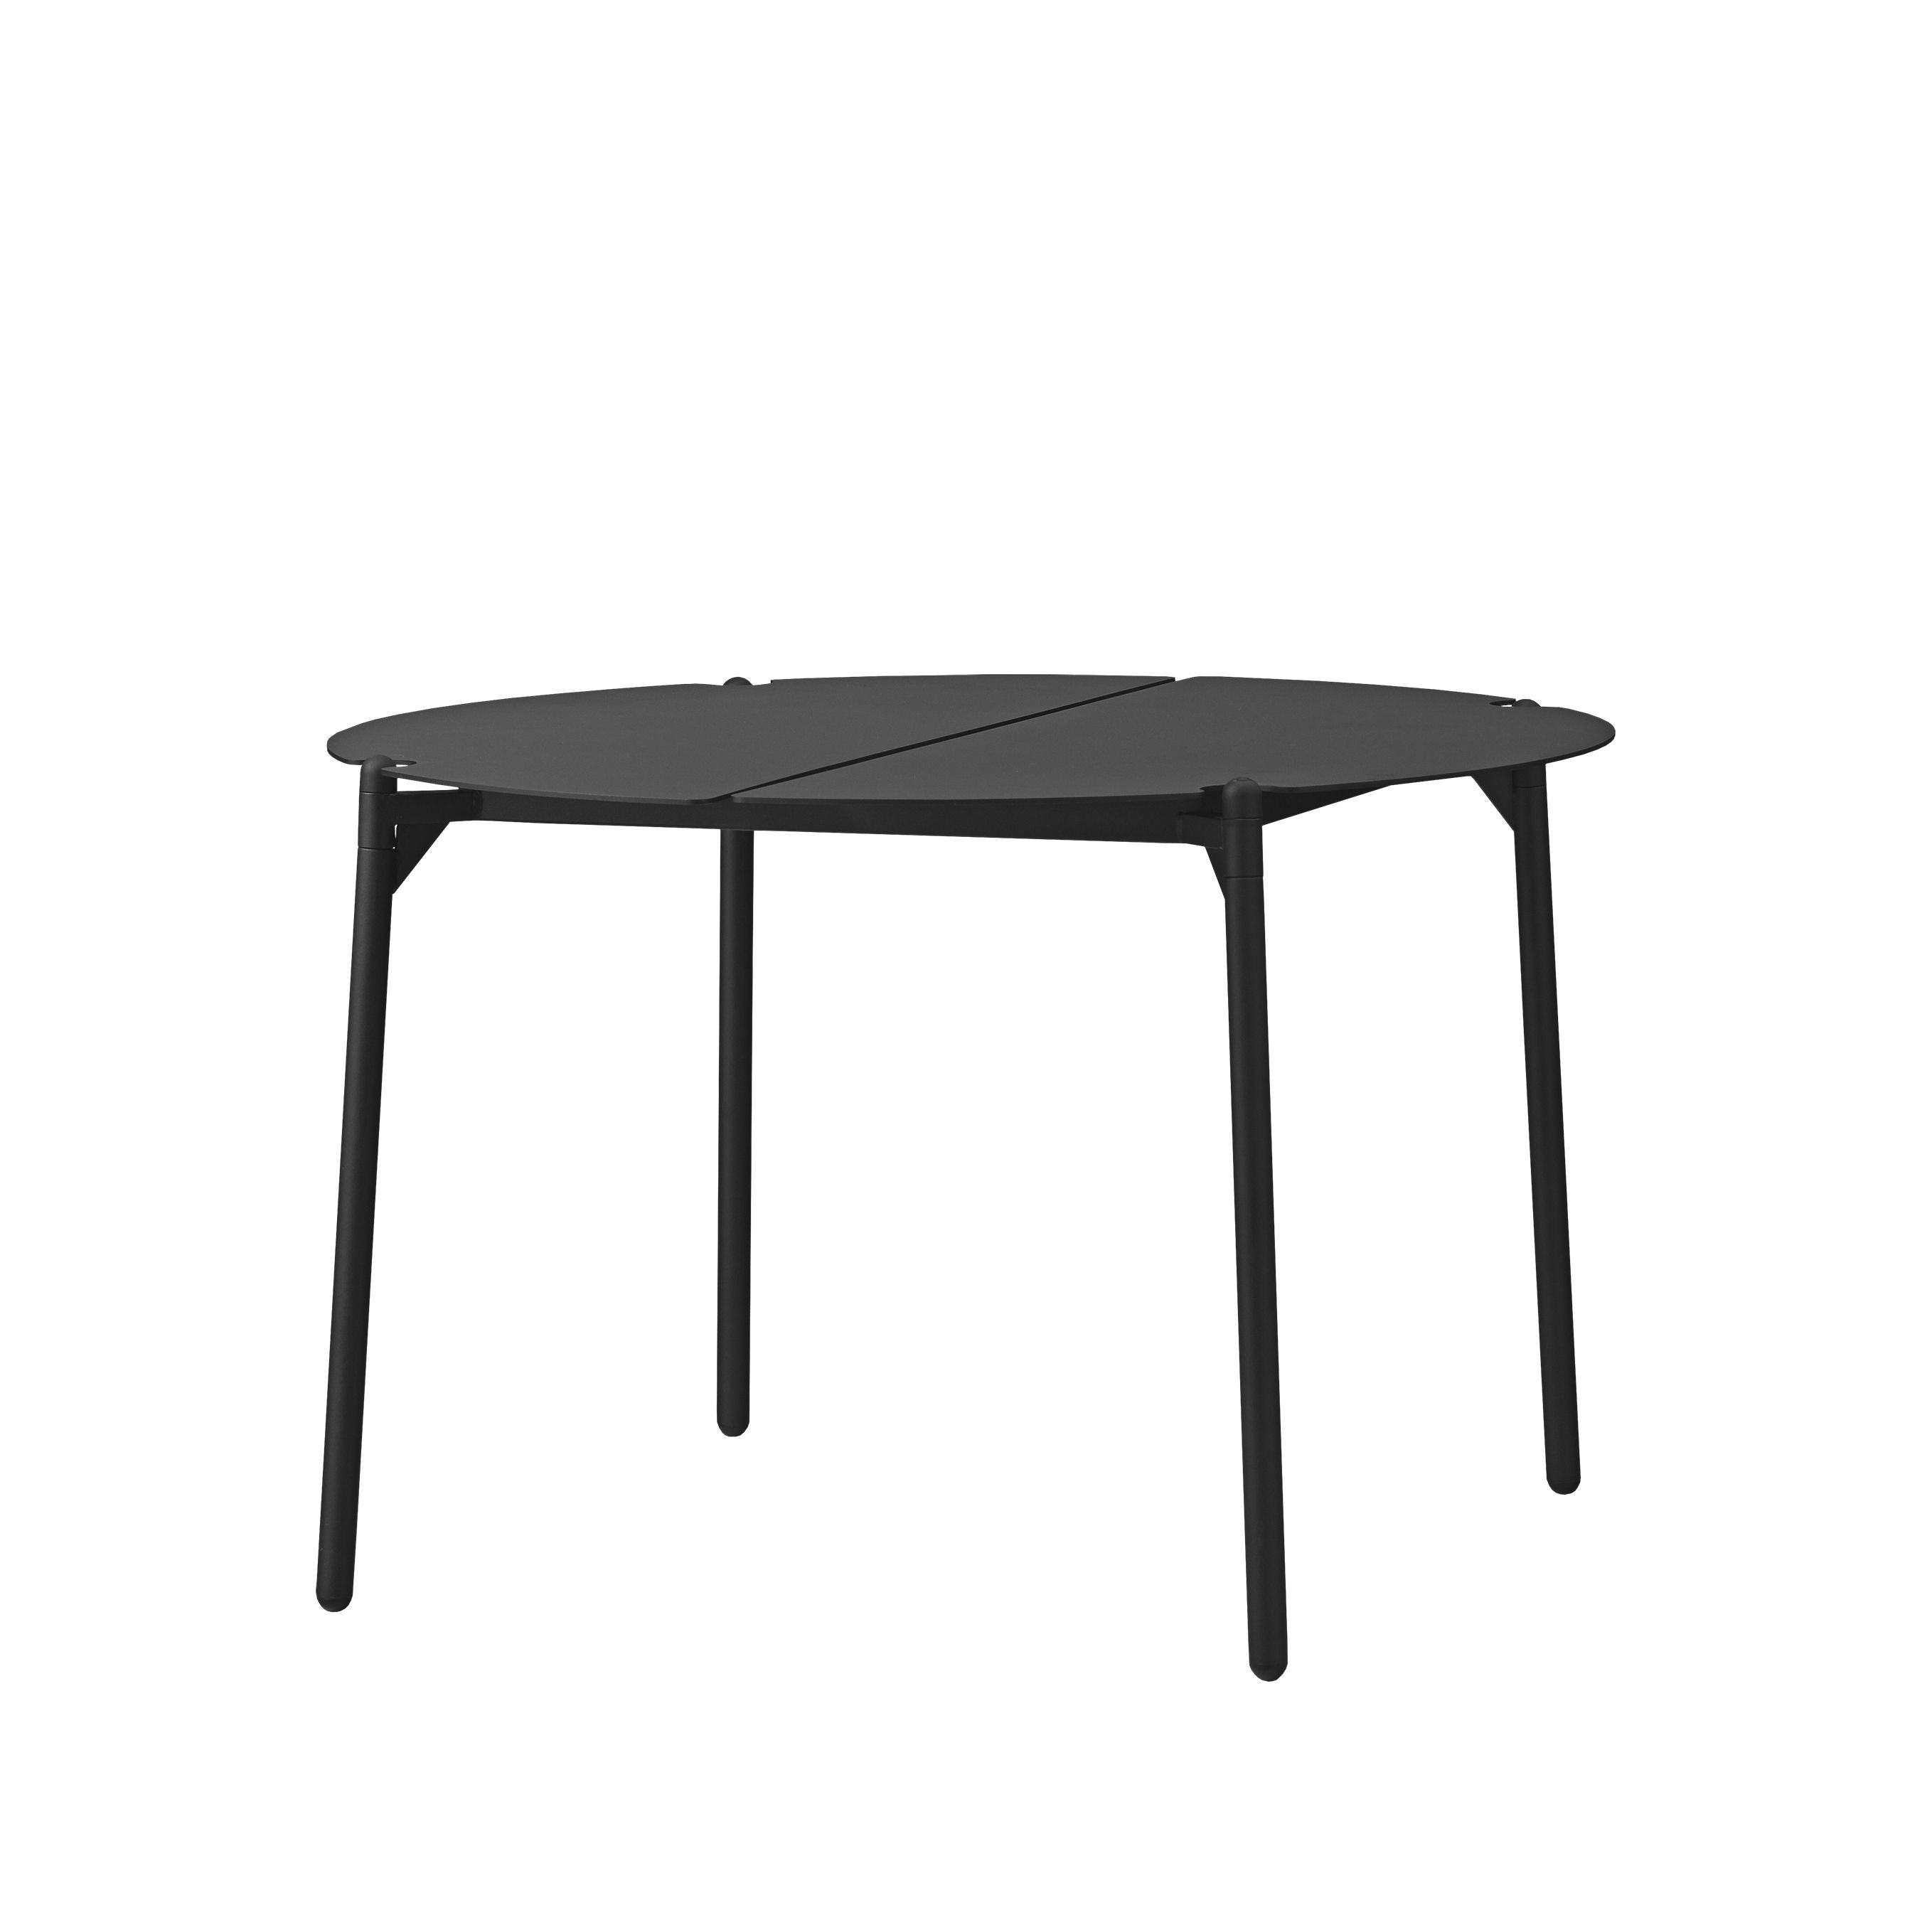 Table basse Novo / Ø 70 x H 45 cm - Métal - AYTM noir en métal